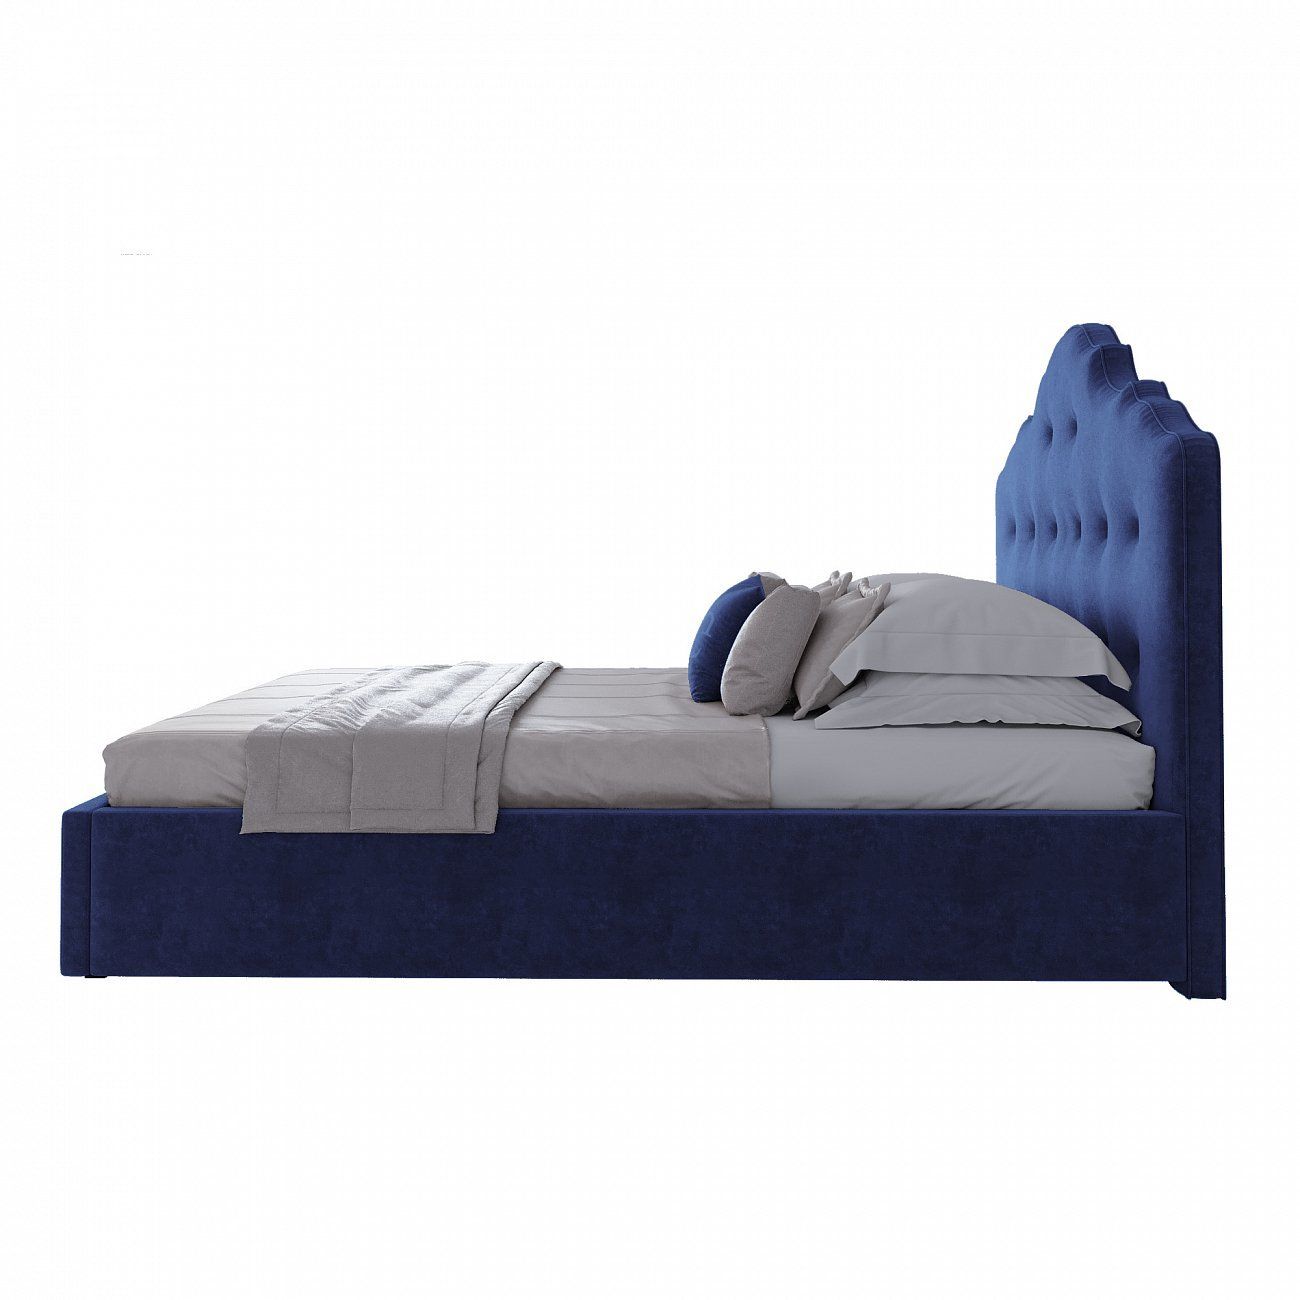 Кровать подростковая 140х200 синяя Palace